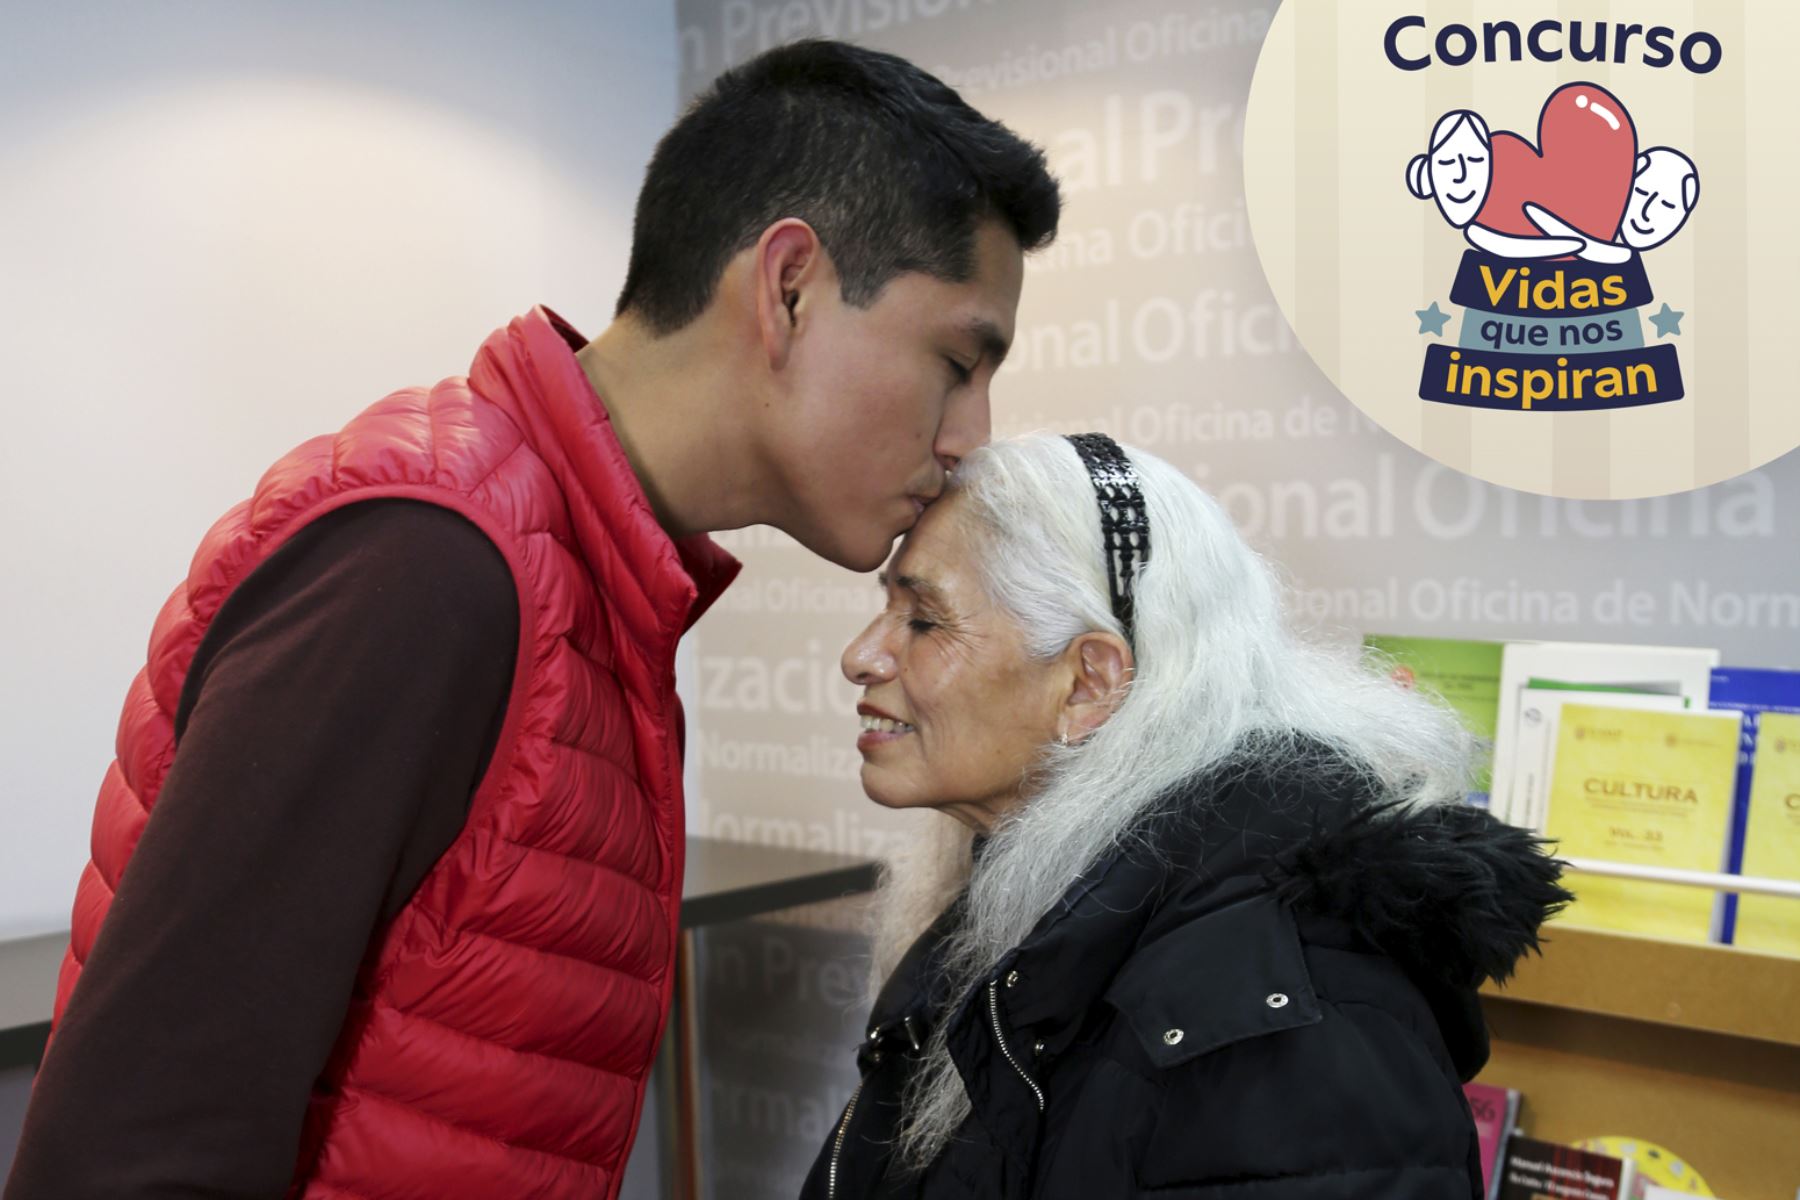 La Oficina de Normalización Previsional (ONP) lanza el concurso “Vidas que nos inspiran”, dirigido a peruanos y extranjeros, de 60 años a más. Foto: ANDINA/Difusión